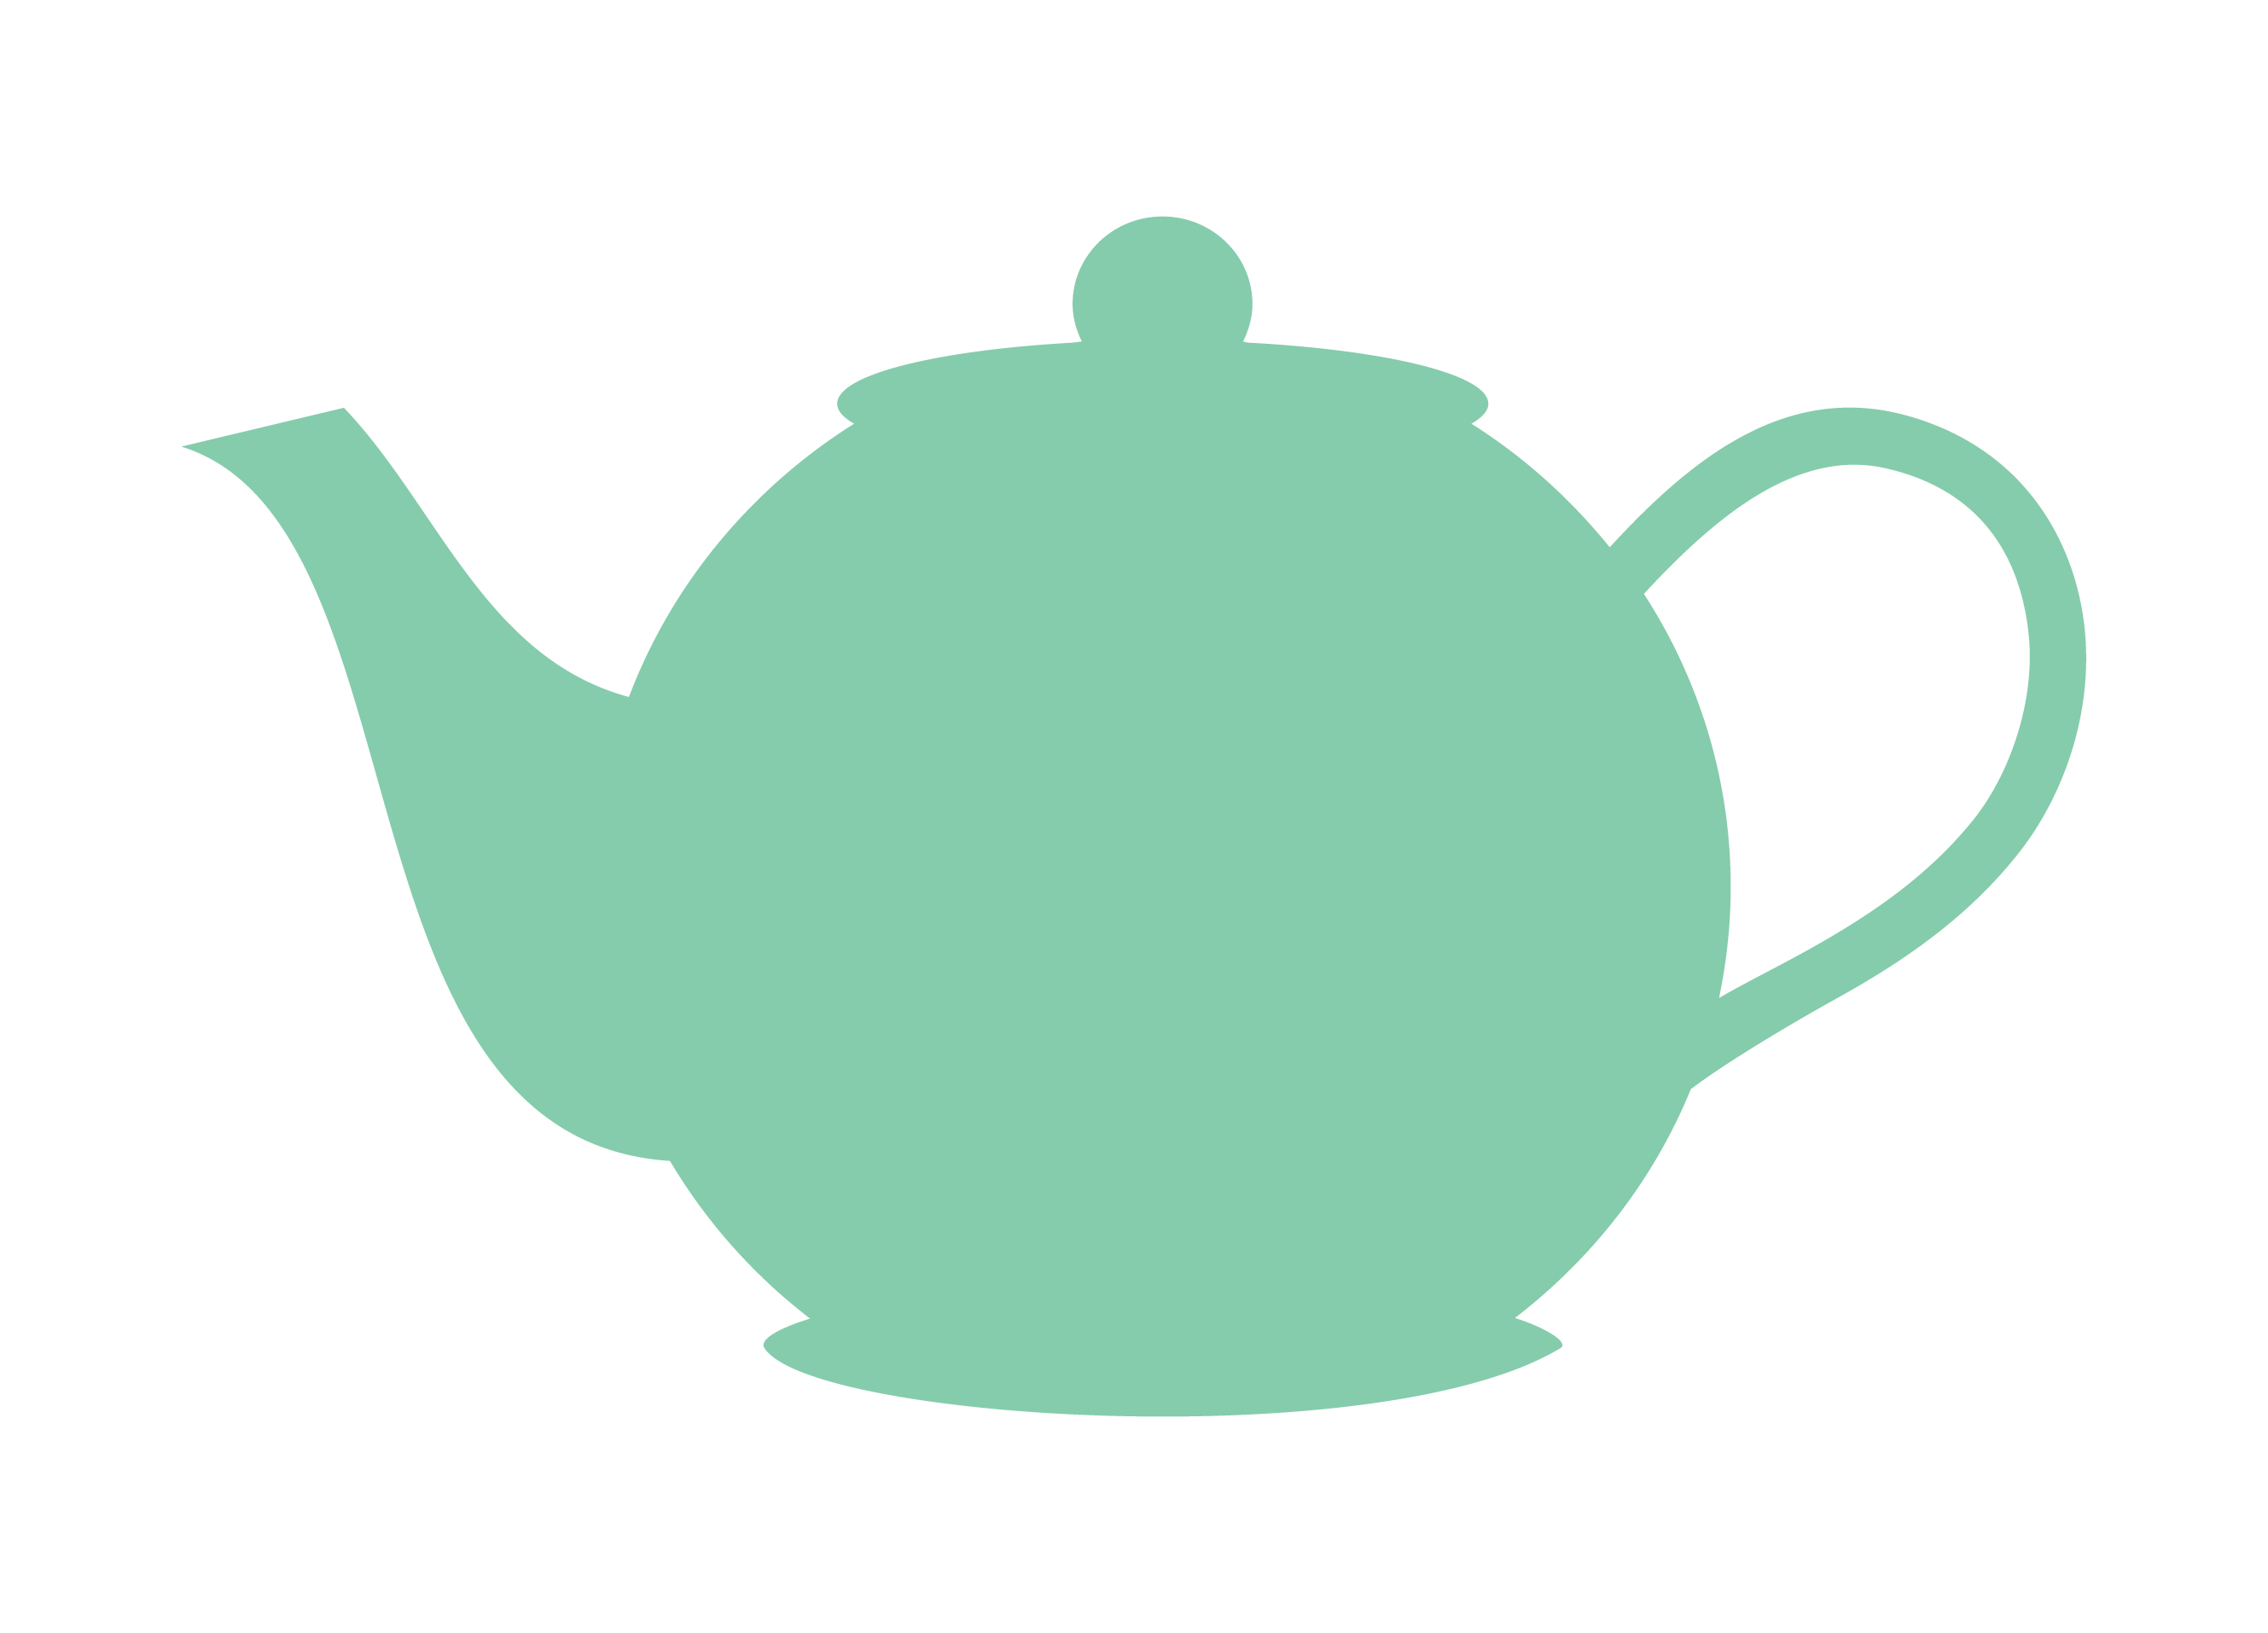 Tea Pot Clipart | Free Download Clip Art | Free Clip Art | on ...